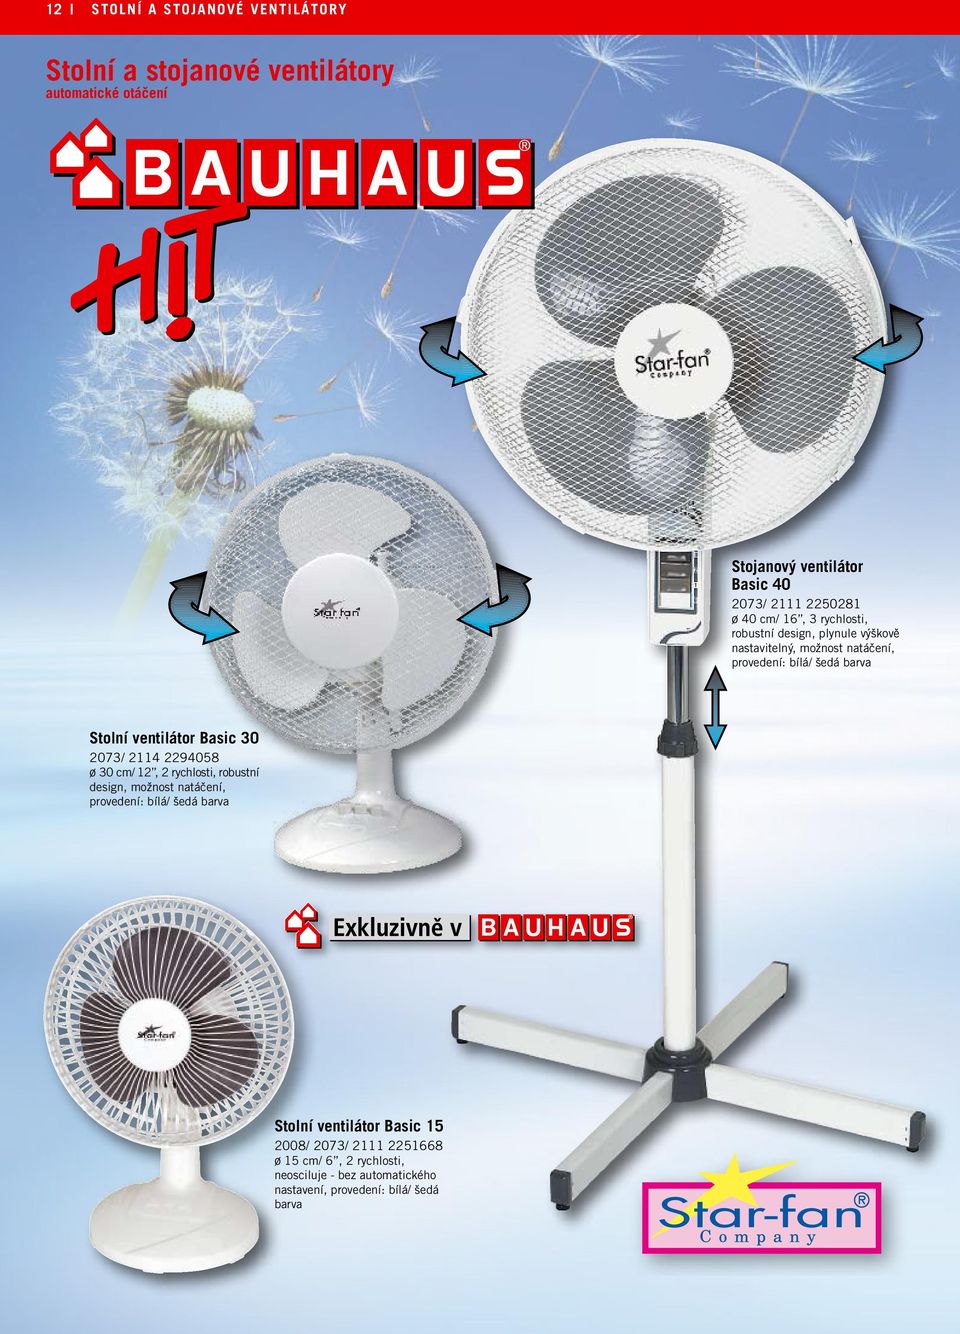 Klimatizace a ventilátory - PDF Free Download